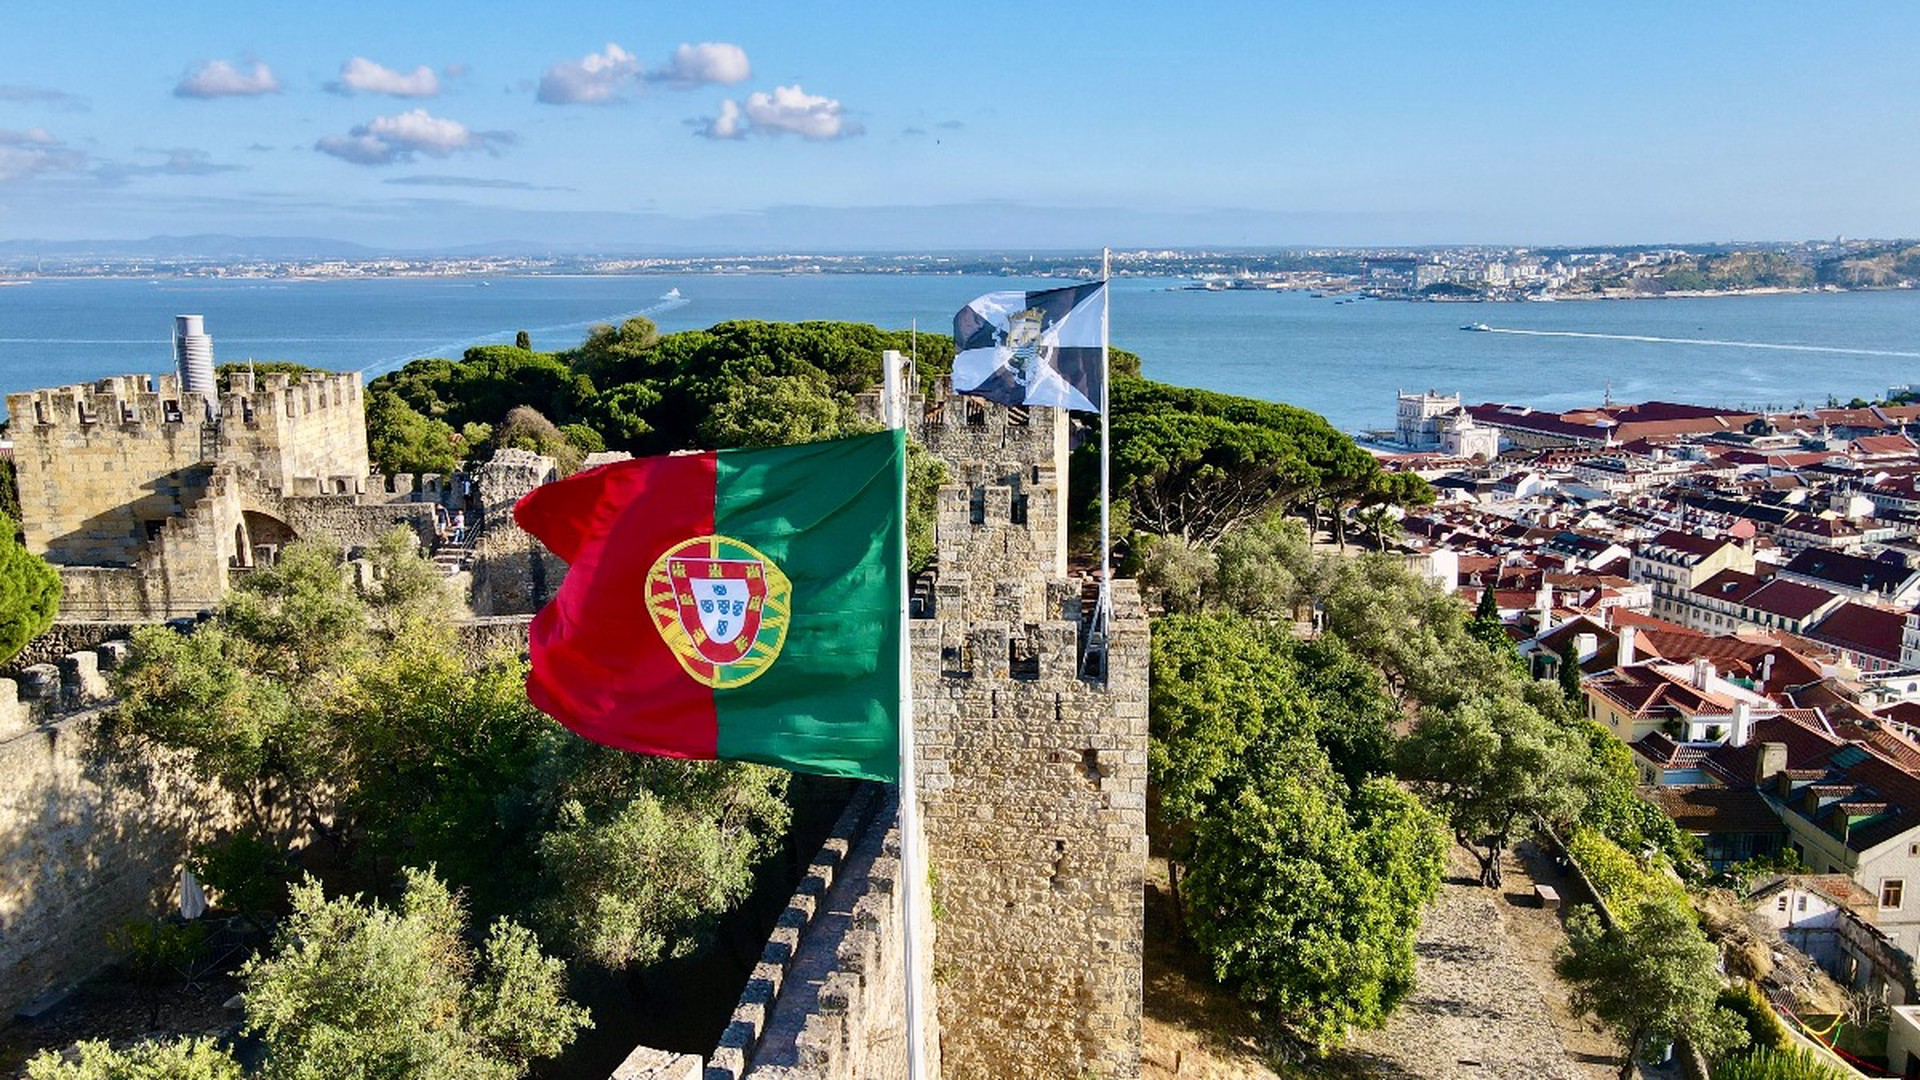 СМИ: Русскоязычного туриста арестовали в Португалии из-за ошибки онлайн-переводчика